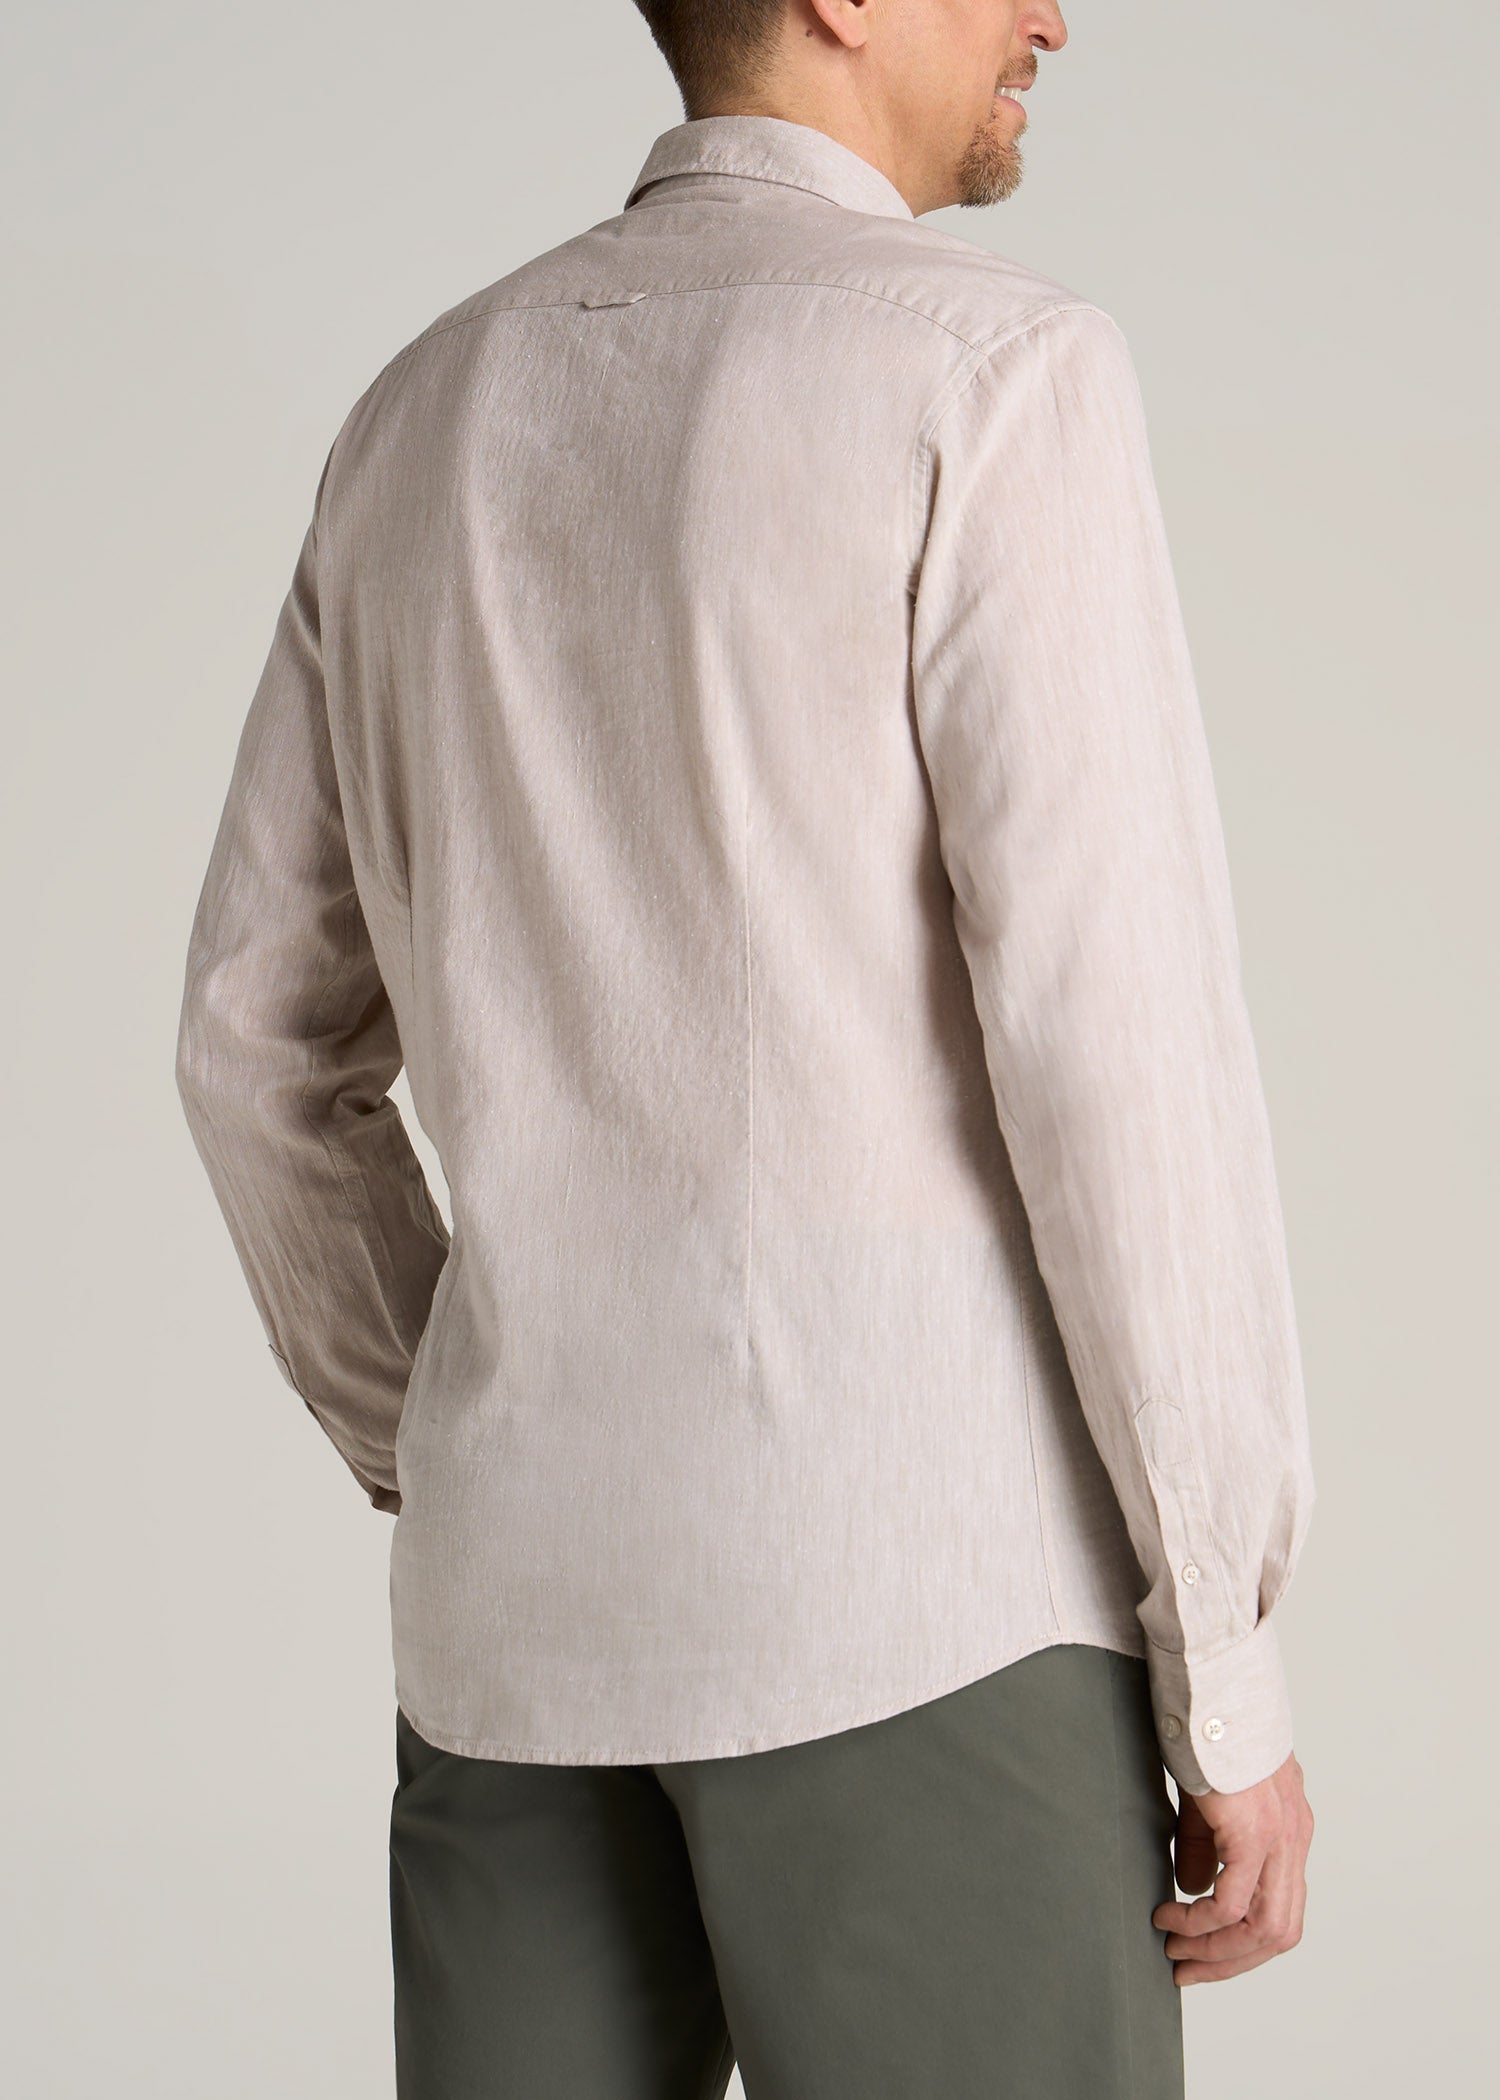 Men's Tall Linen Shirt: Long Sleeve Shirt Natural